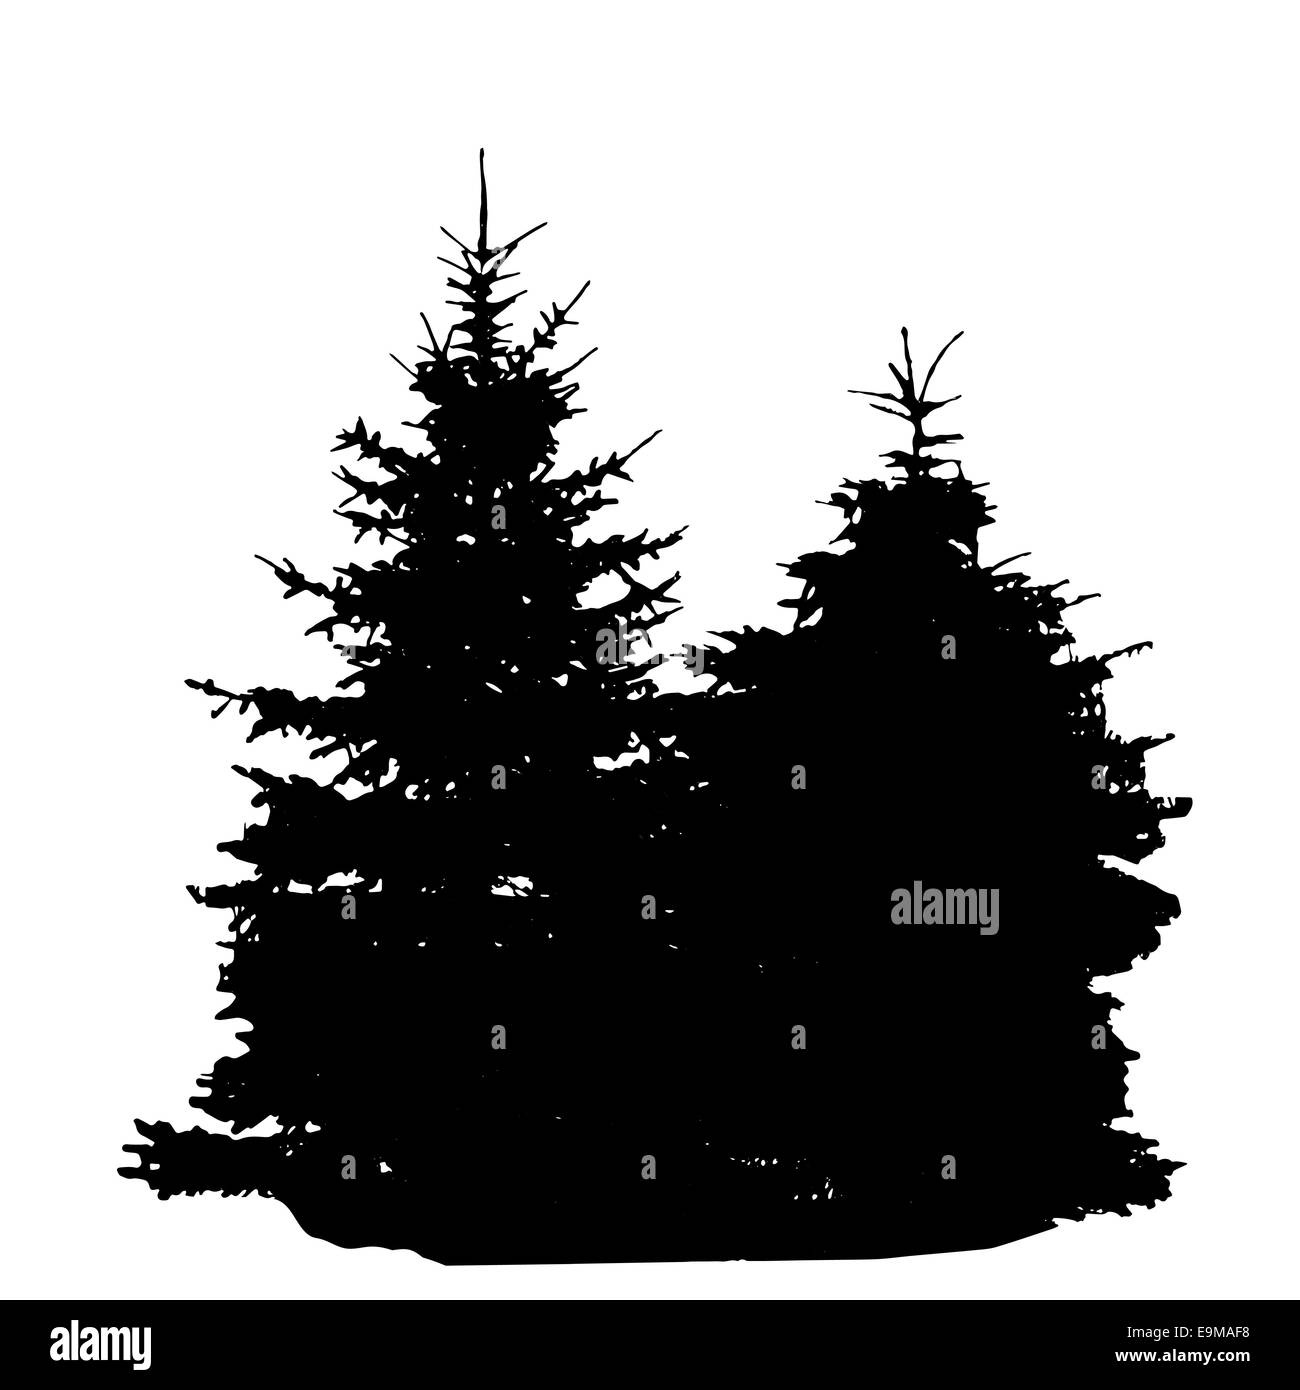 Baum-Silhouette isoliert auf weißem Migrationshintergrund. Vecrtor Illustration Stockfoto